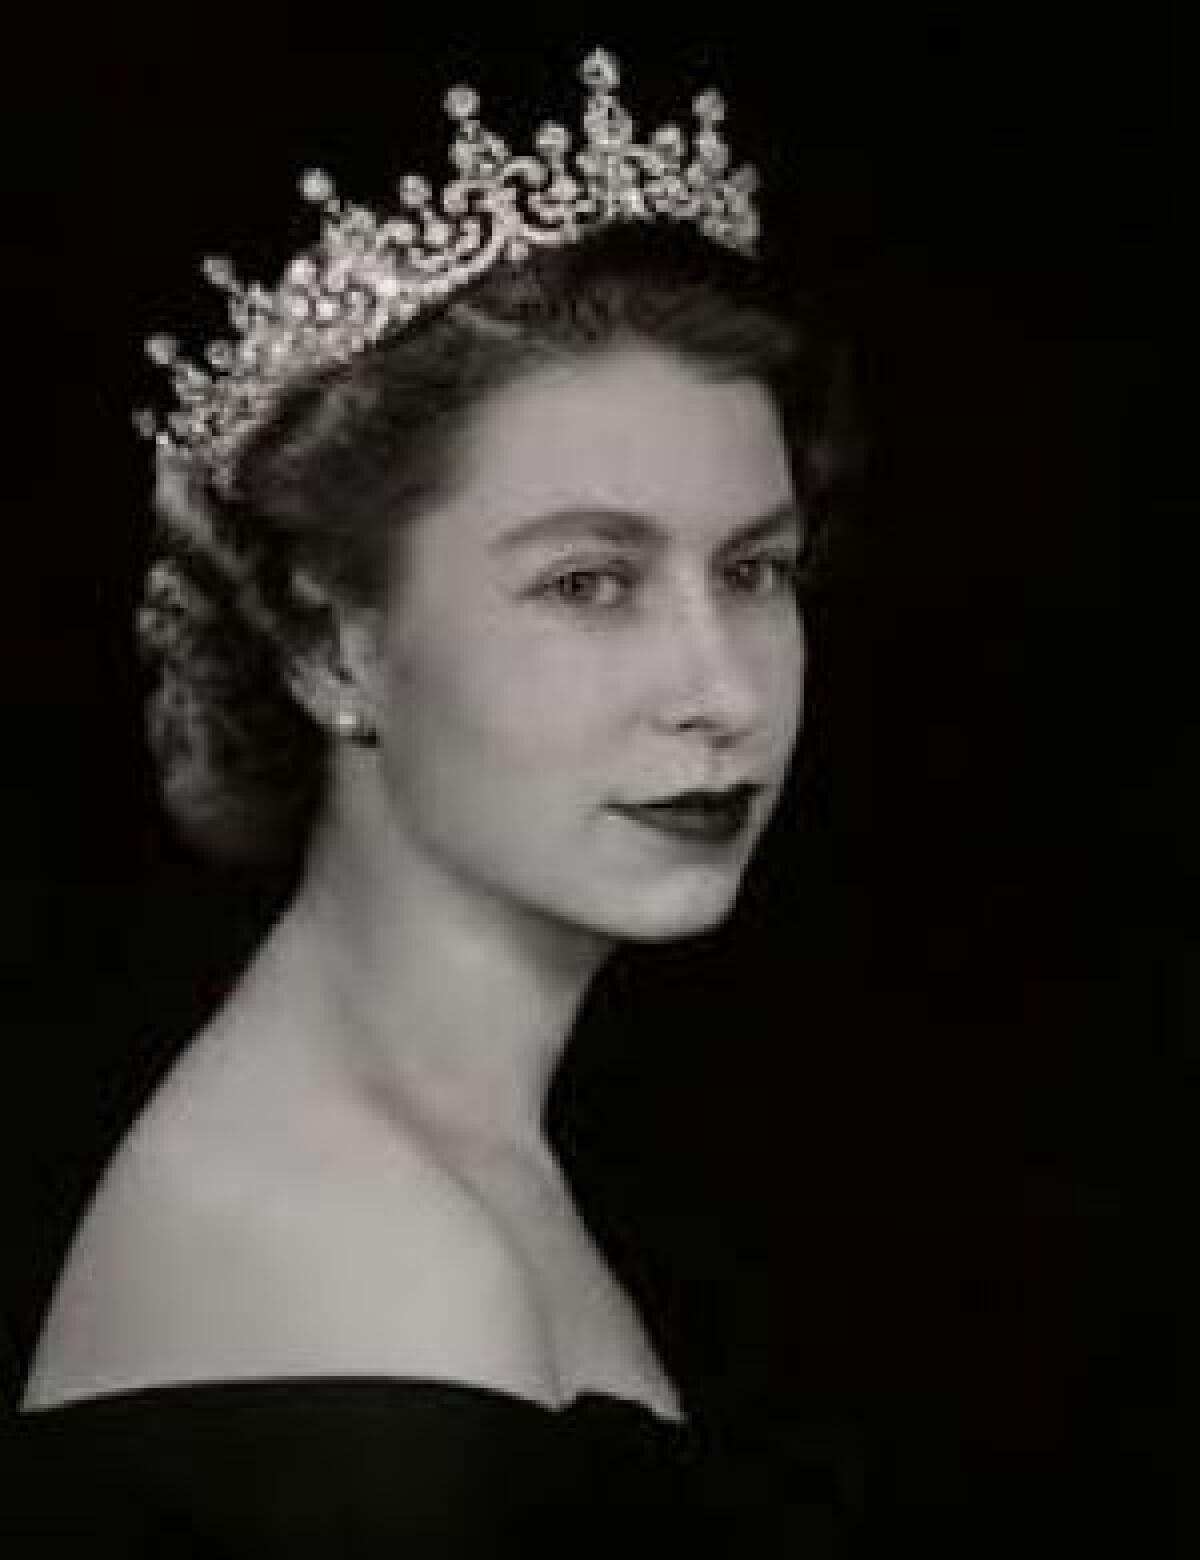 Muere la reina Isabel II de Inglaterra a la edad de 96 años